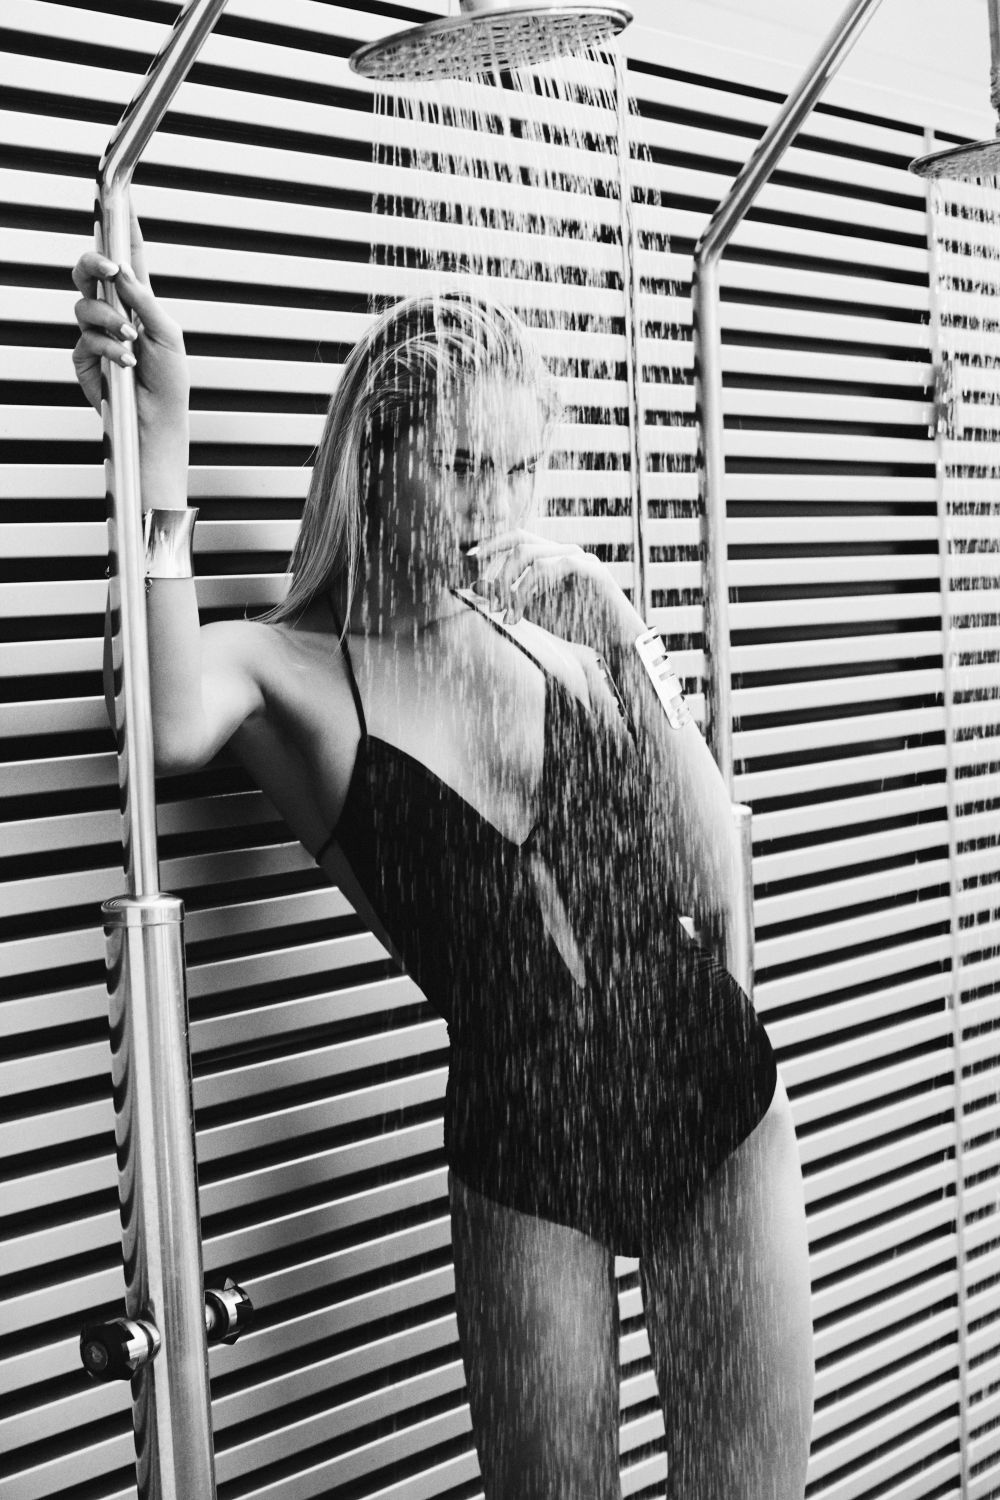 La ducha debería durar de cinco a 15 minutos como máximo según los expertos para respetar la barrera hipolipídica de la piel.